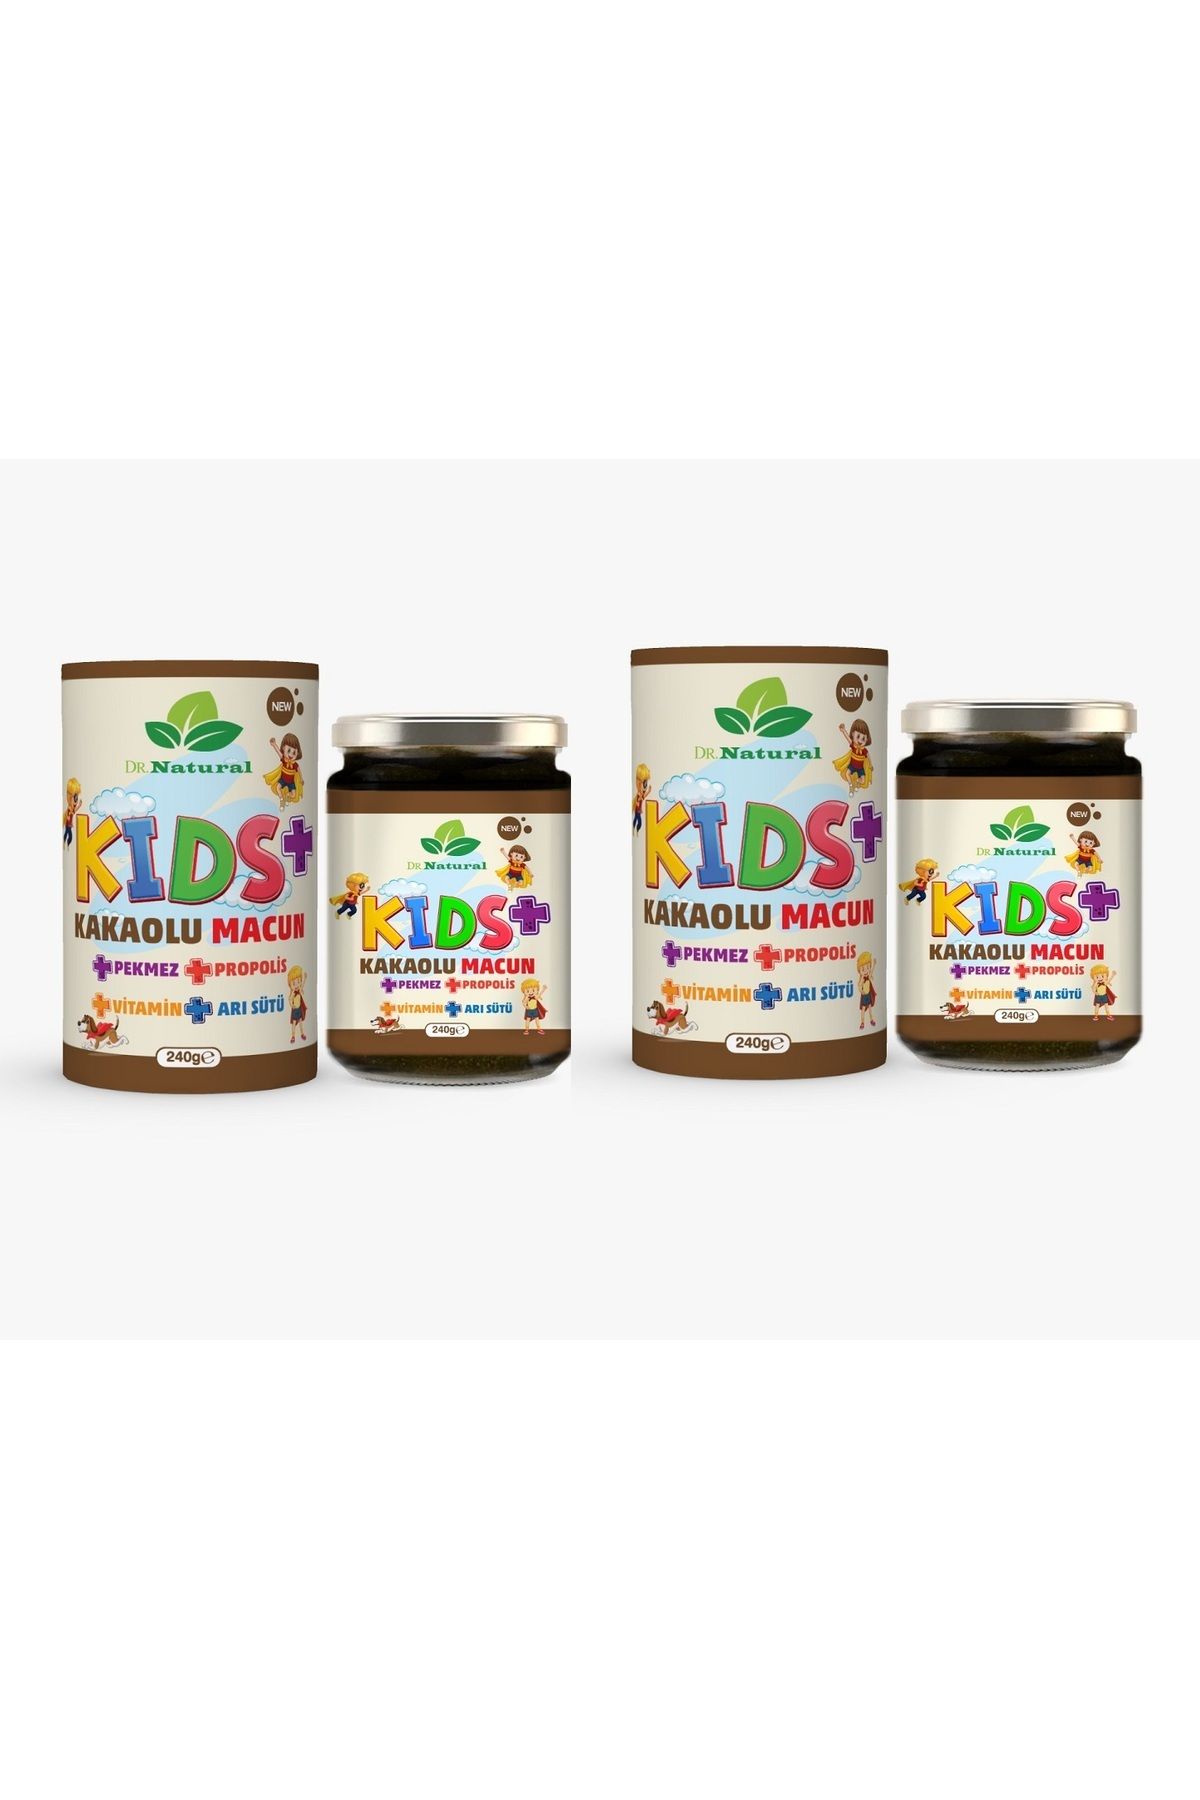 DRNATURAL Kids Çocuk Macunu Kakaolu - Arı Sütü - Propolis - Pekmez Ve Vitamin 240 gr ( 2 Adet )